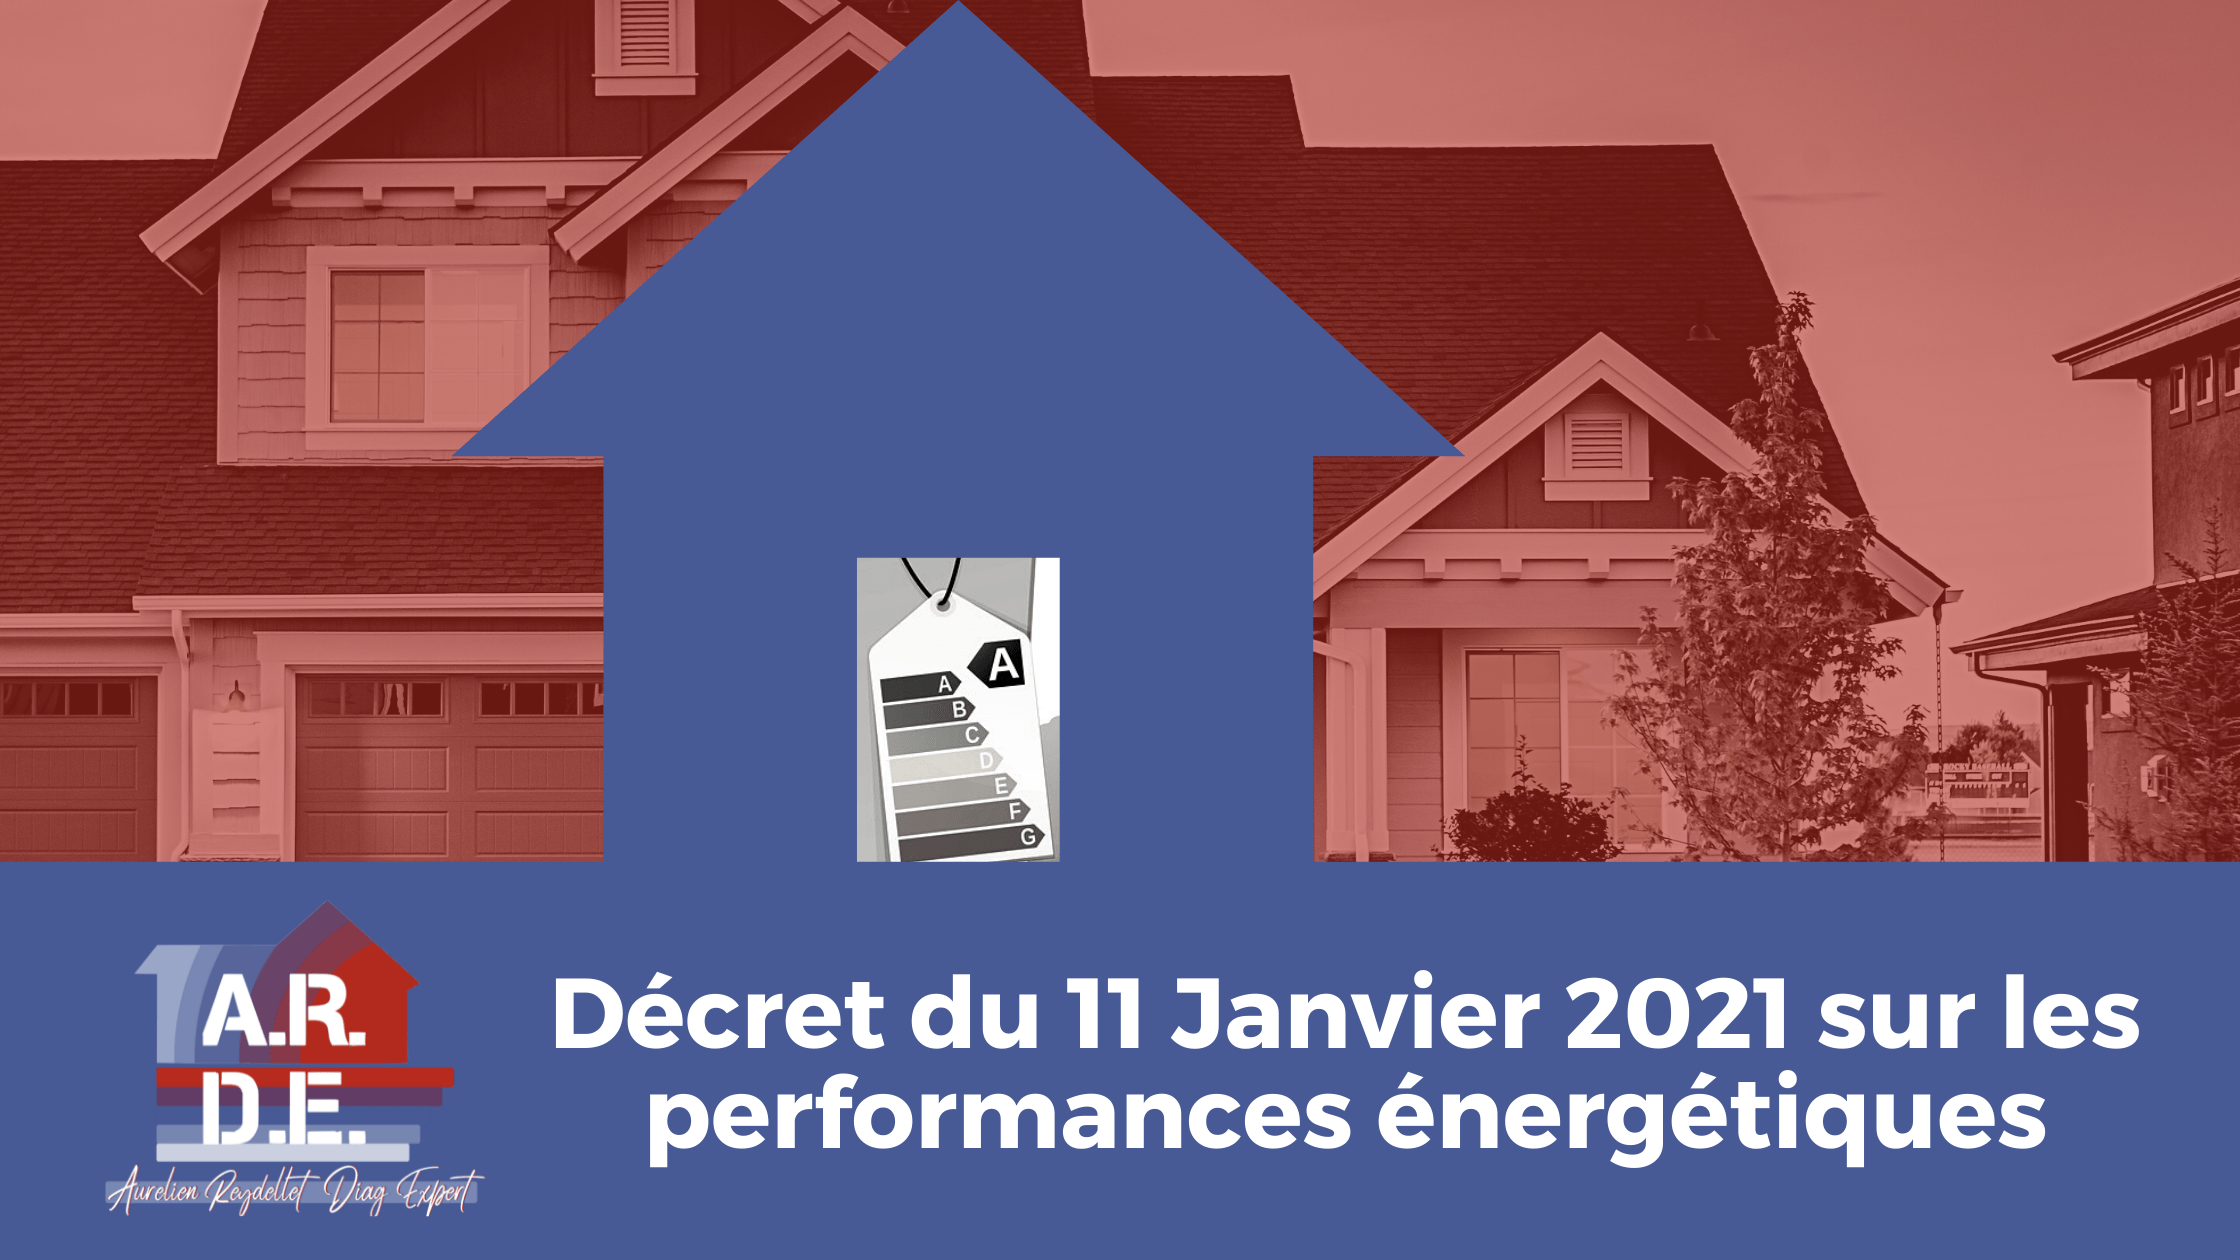 You are currently viewing Décret du 11 Janvier 2021 sur les performances énergétiques